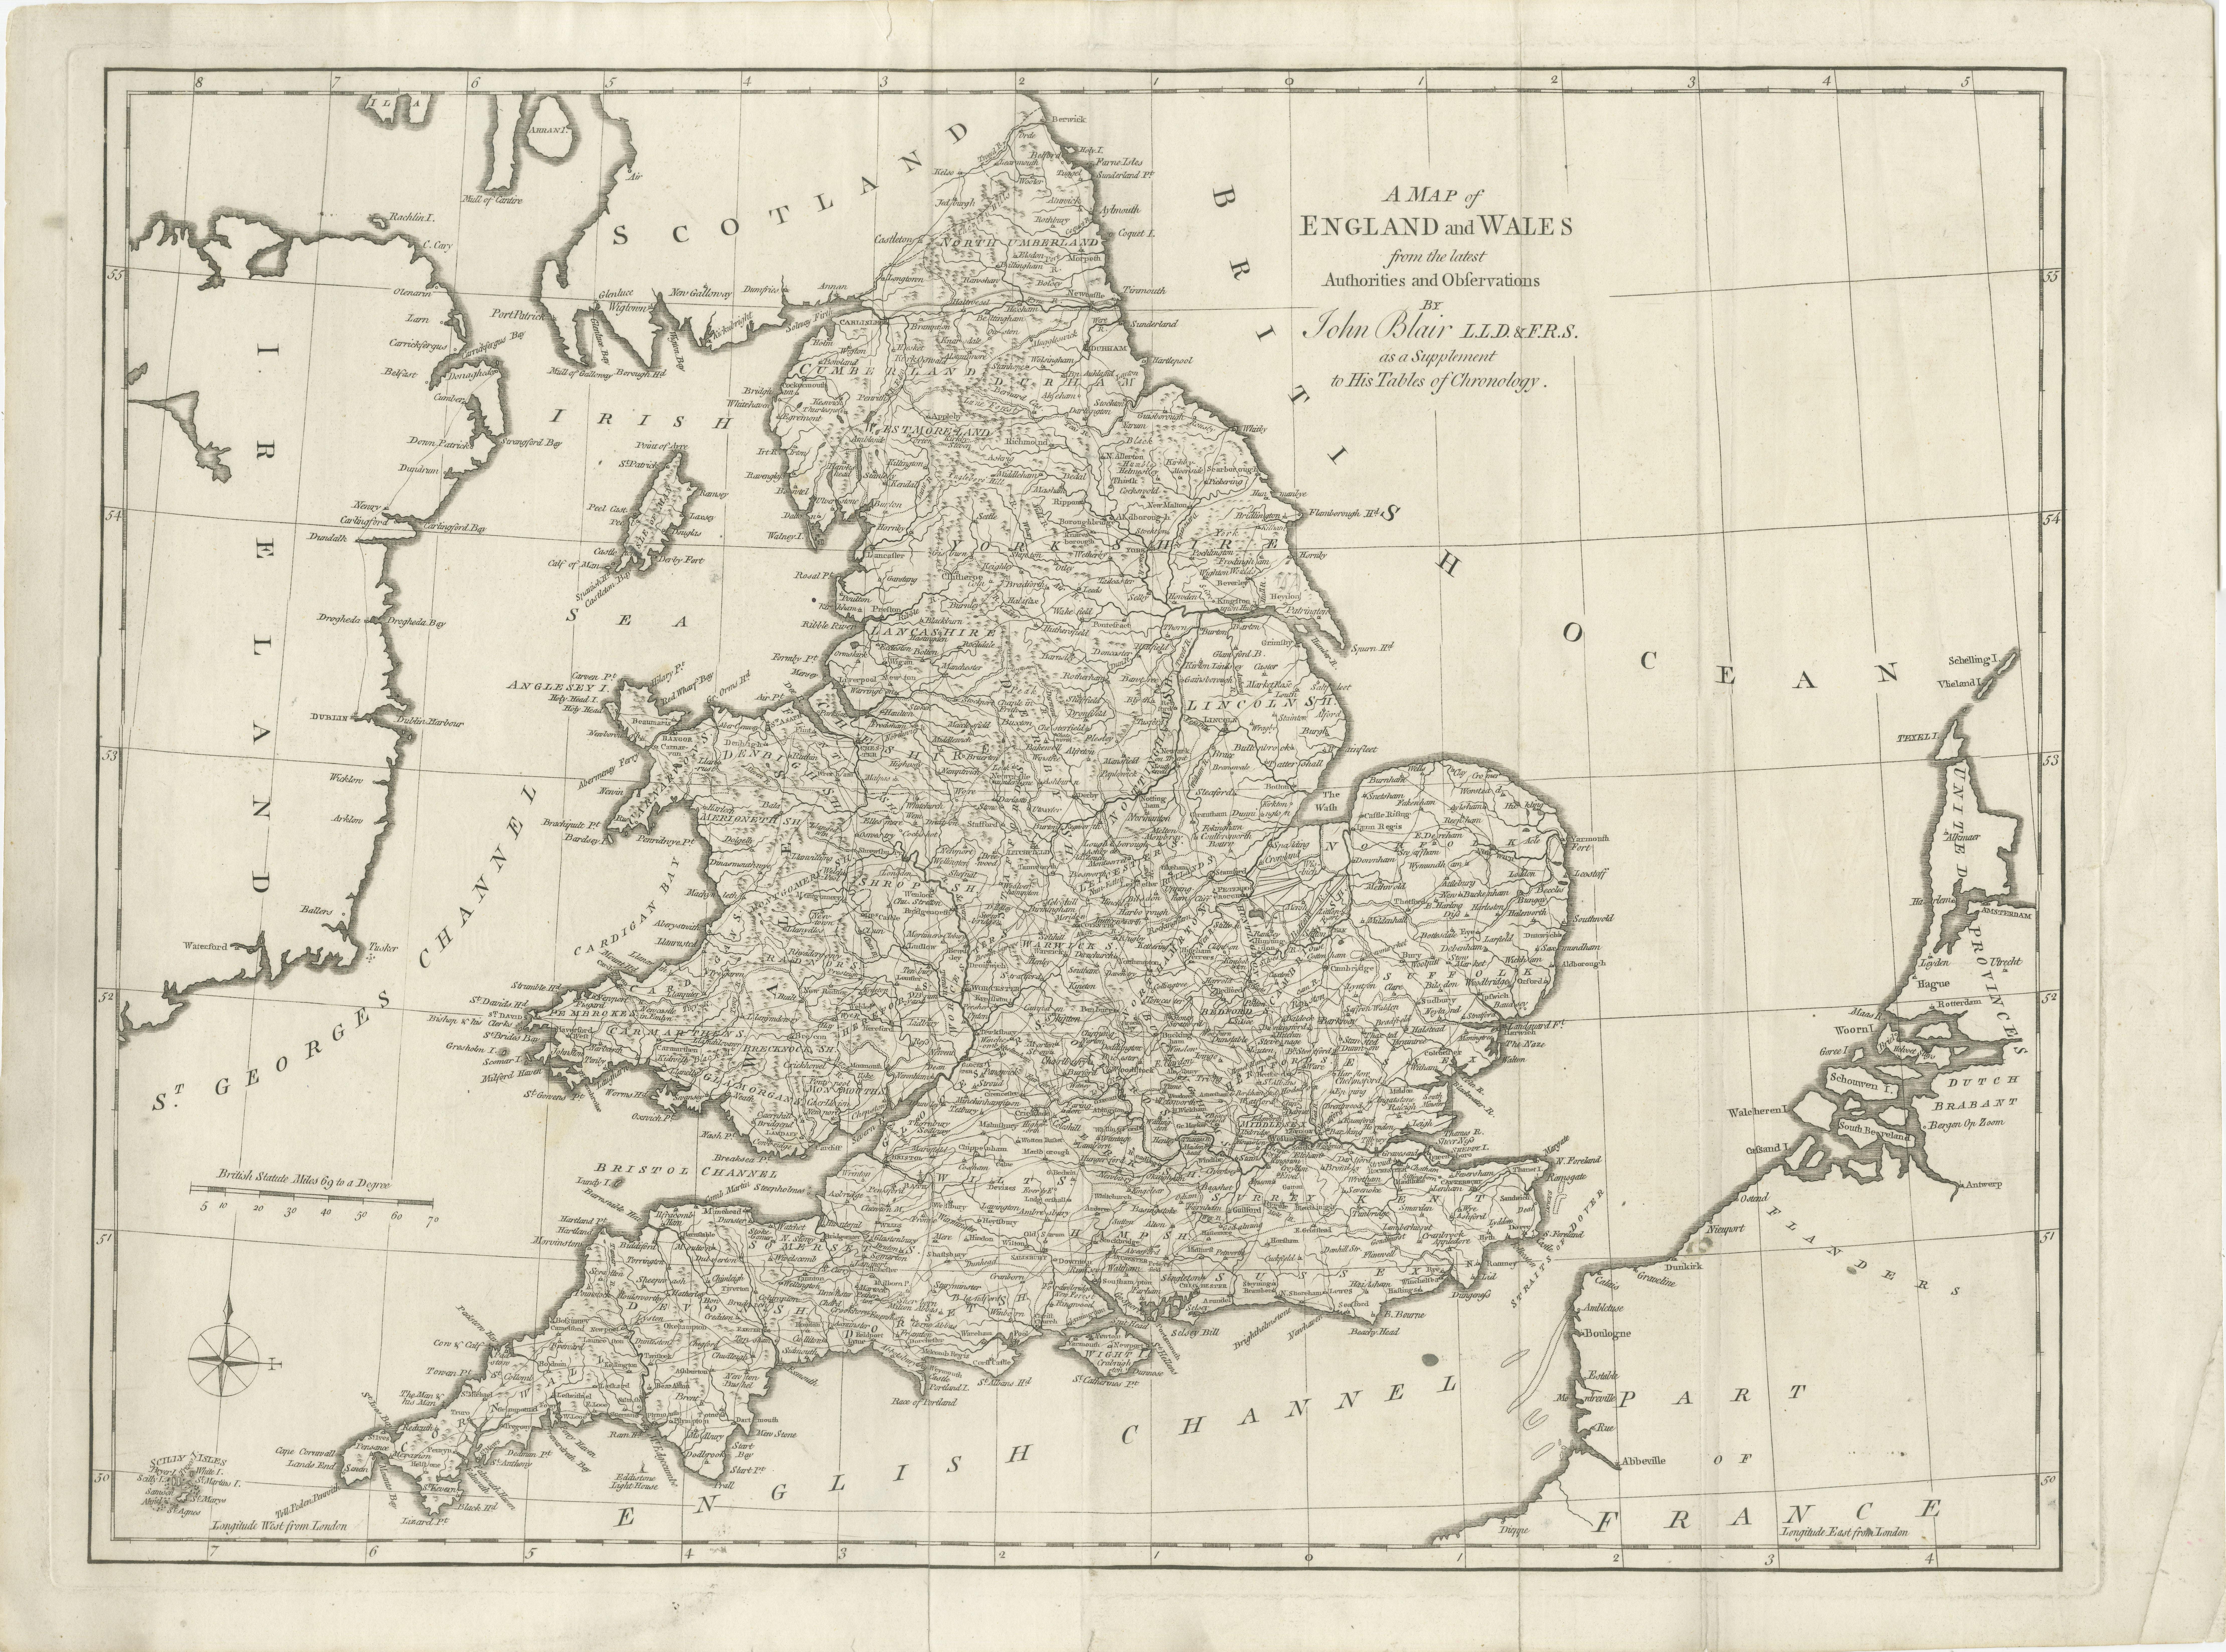 Carte ancienne intitulée 'A Map of England and Wales (...)'. Grande carte ancienne de l'Angleterre et du Pays de Galles, avec une partie des côtes continentales et irlandaises. Publié par J. Blair, vers 1779. 